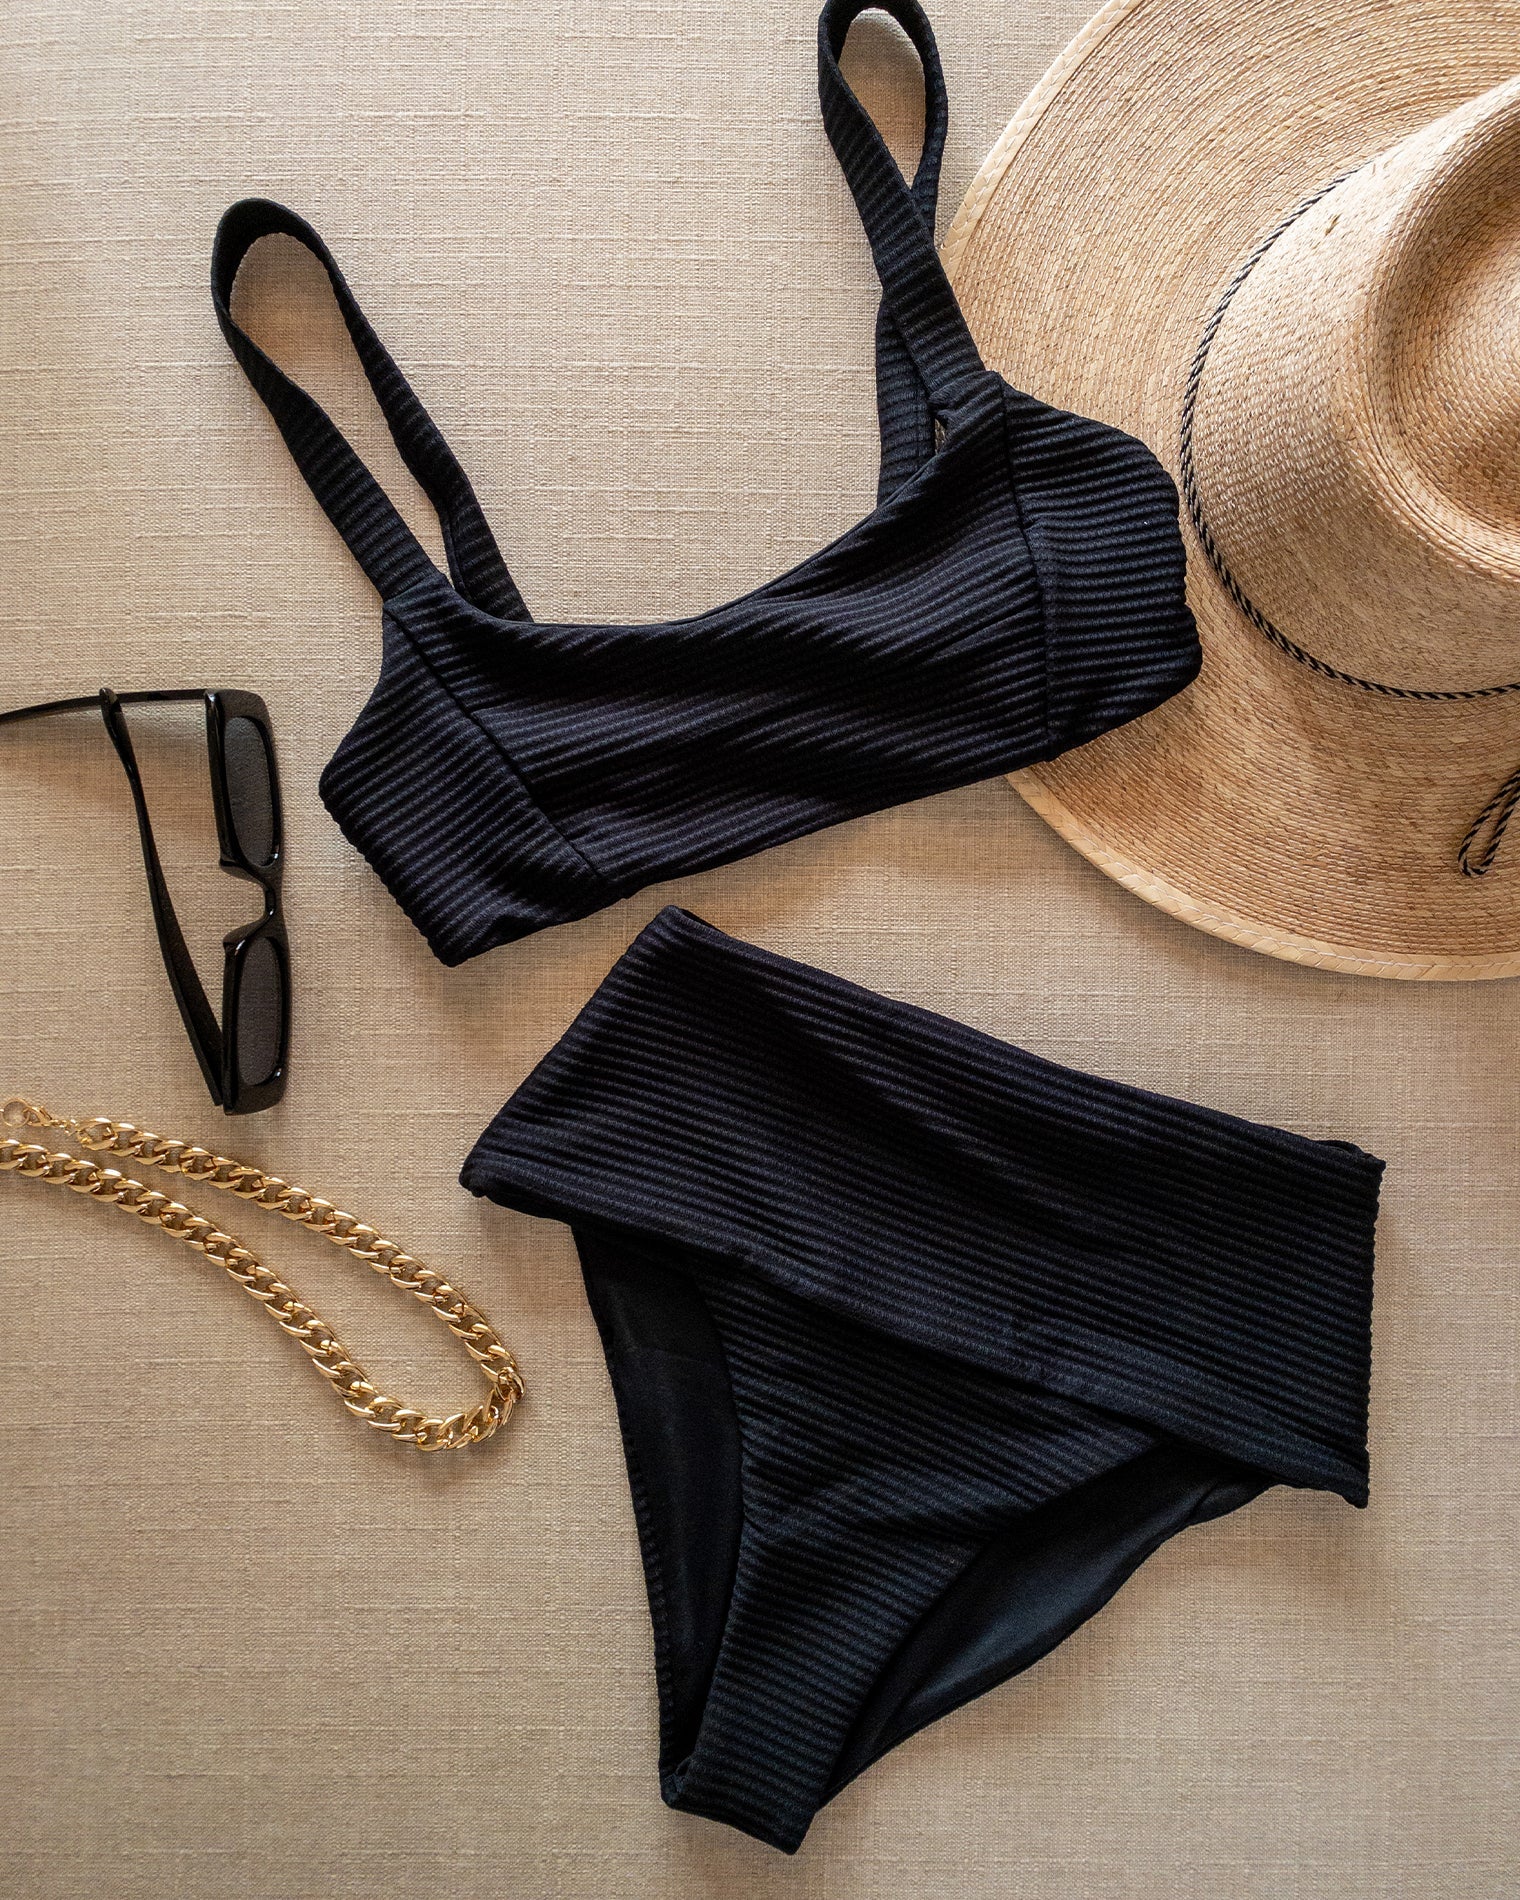 Eco Chic Repreve® Jess Bikini Top - Black Black | Model: Ali (size: XL)